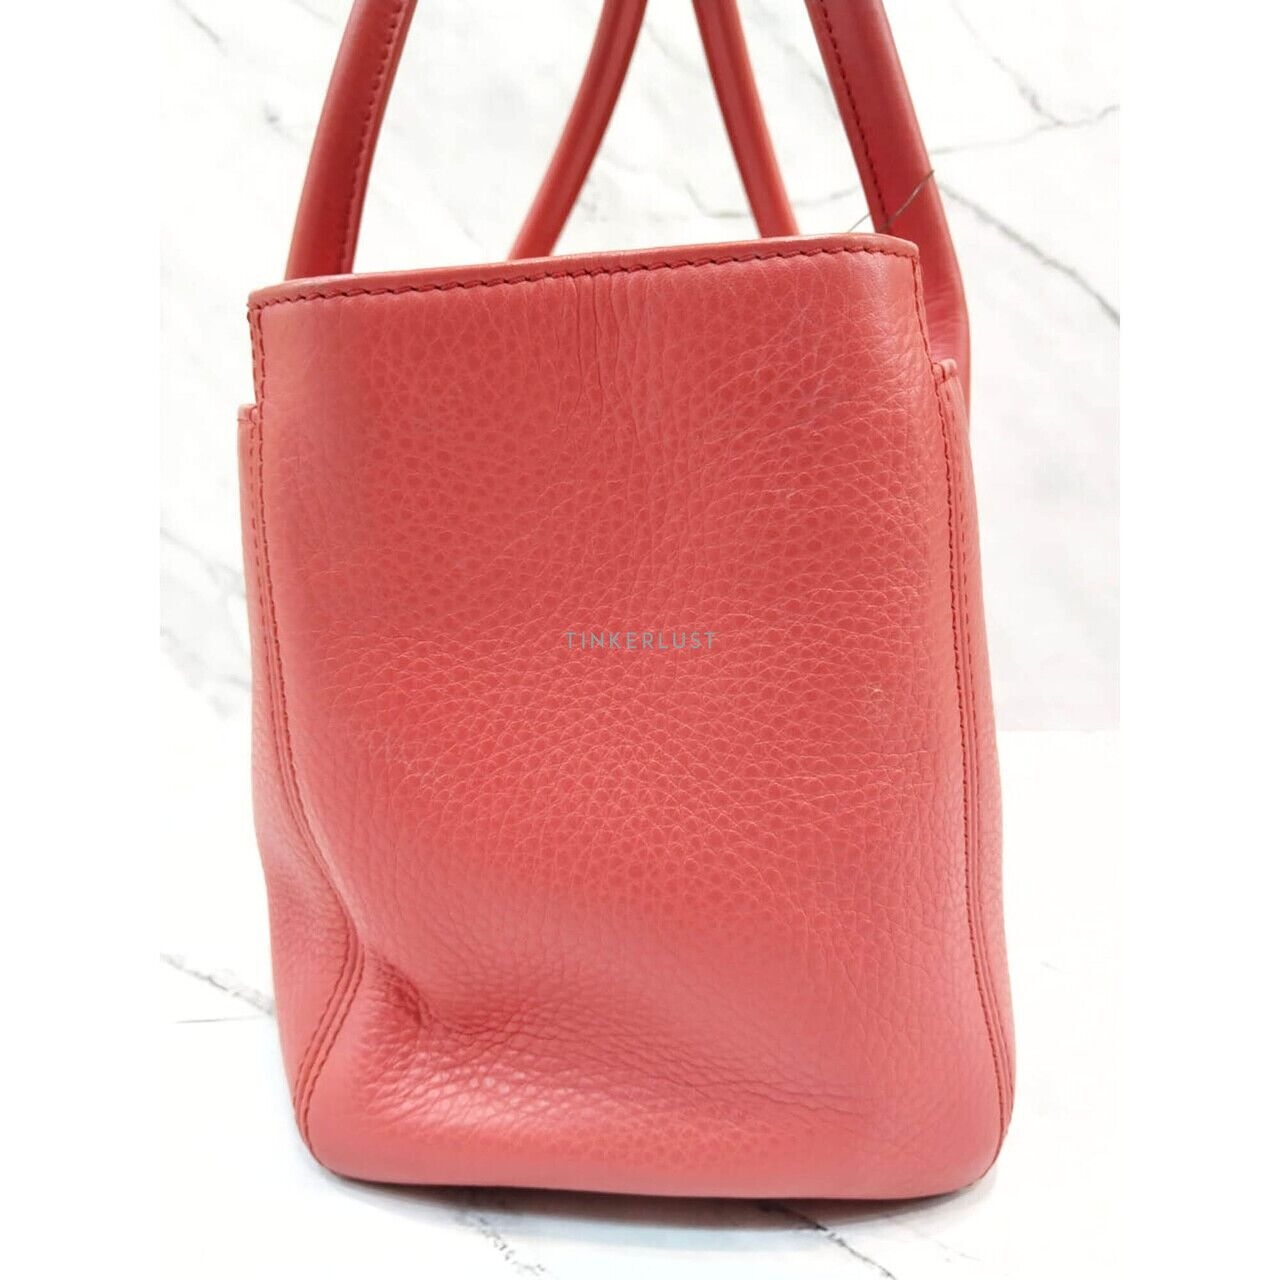 Chanel Executive Pink Salmon She #19 Tote Bag